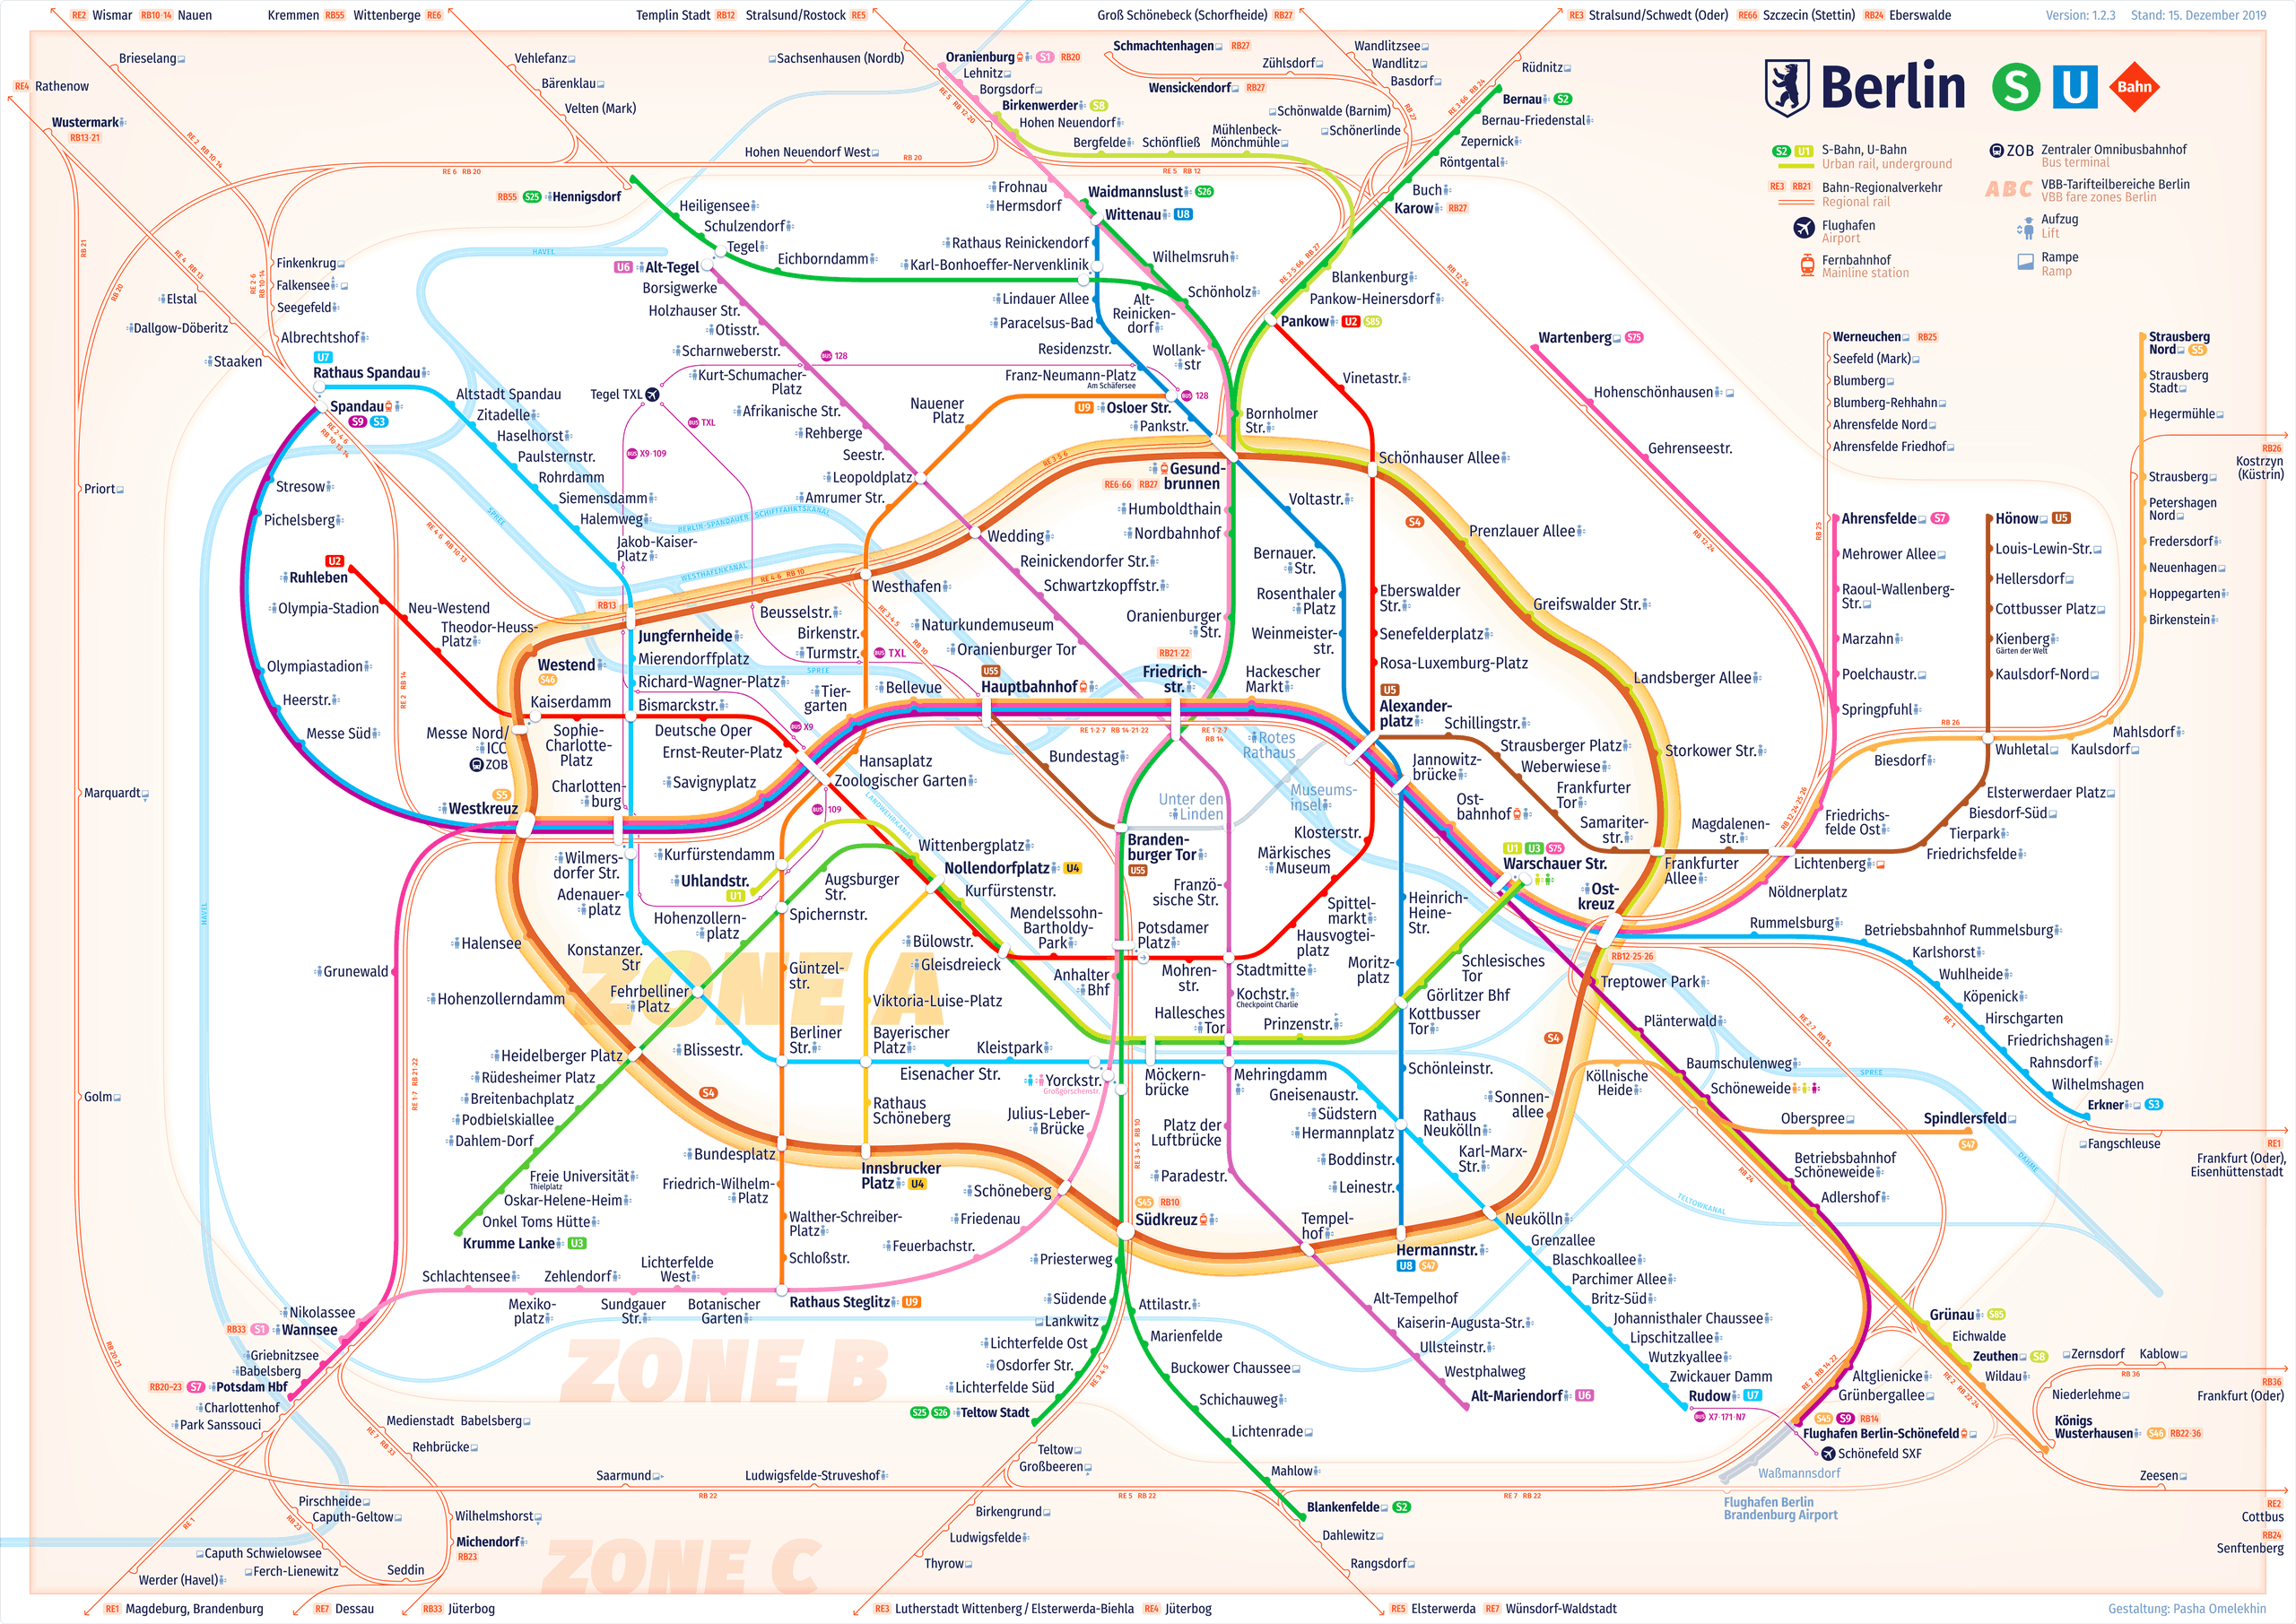 How long is Berlin S-Bahn?